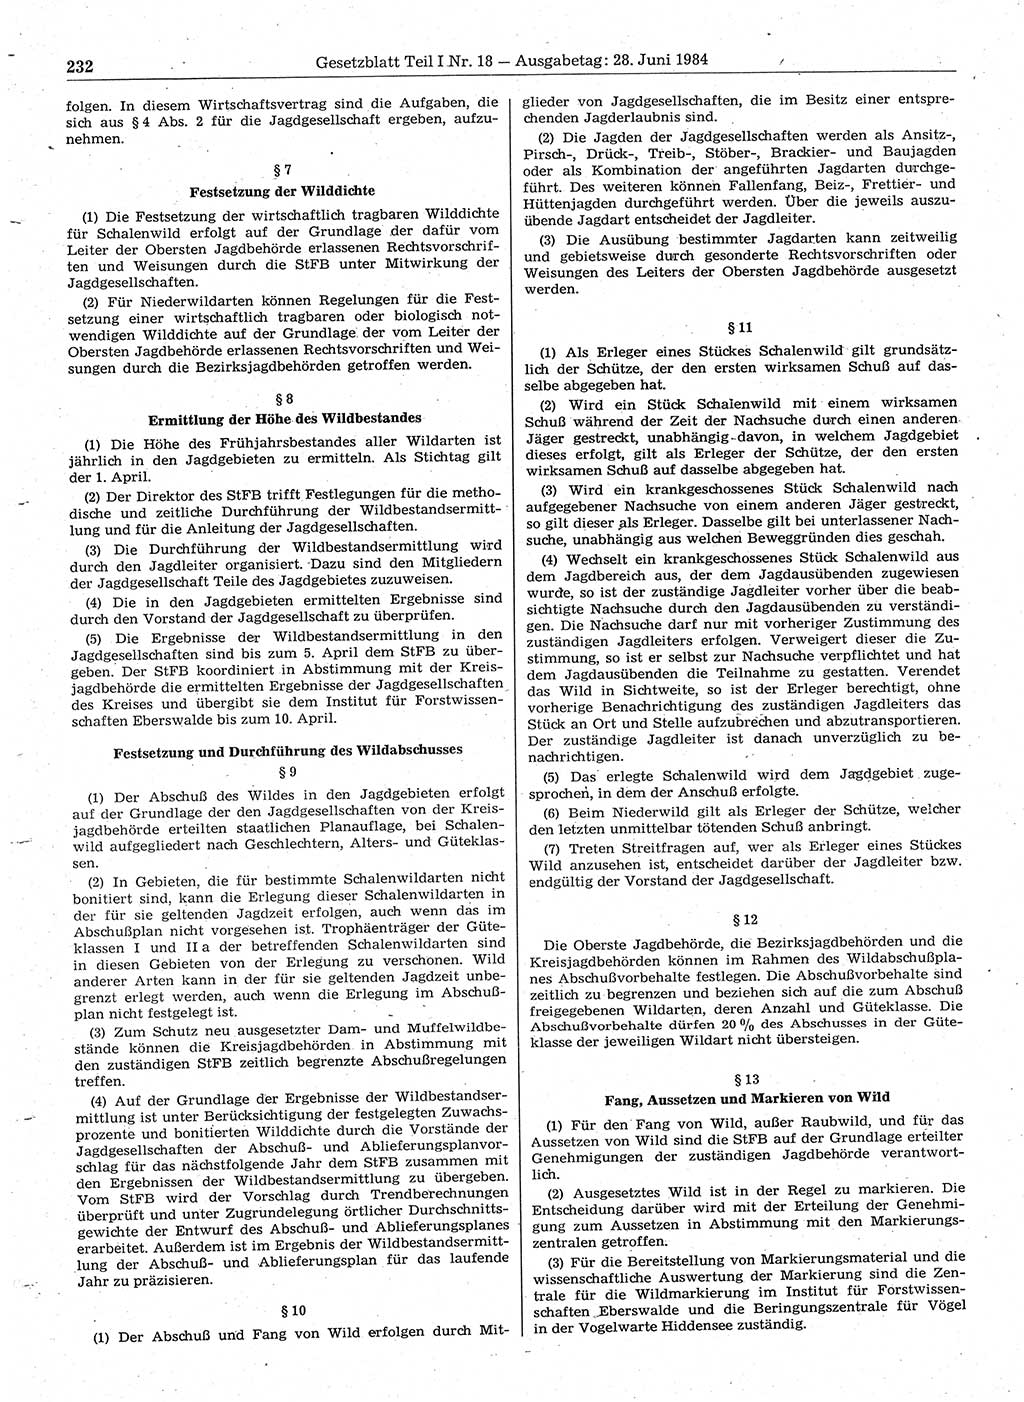 Gesetzblatt (GBl.) der Deutschen Demokratischen Republik (DDR) Teil Ⅰ 1984, Seite 232 (GBl. DDR Ⅰ 1984, S. 232)